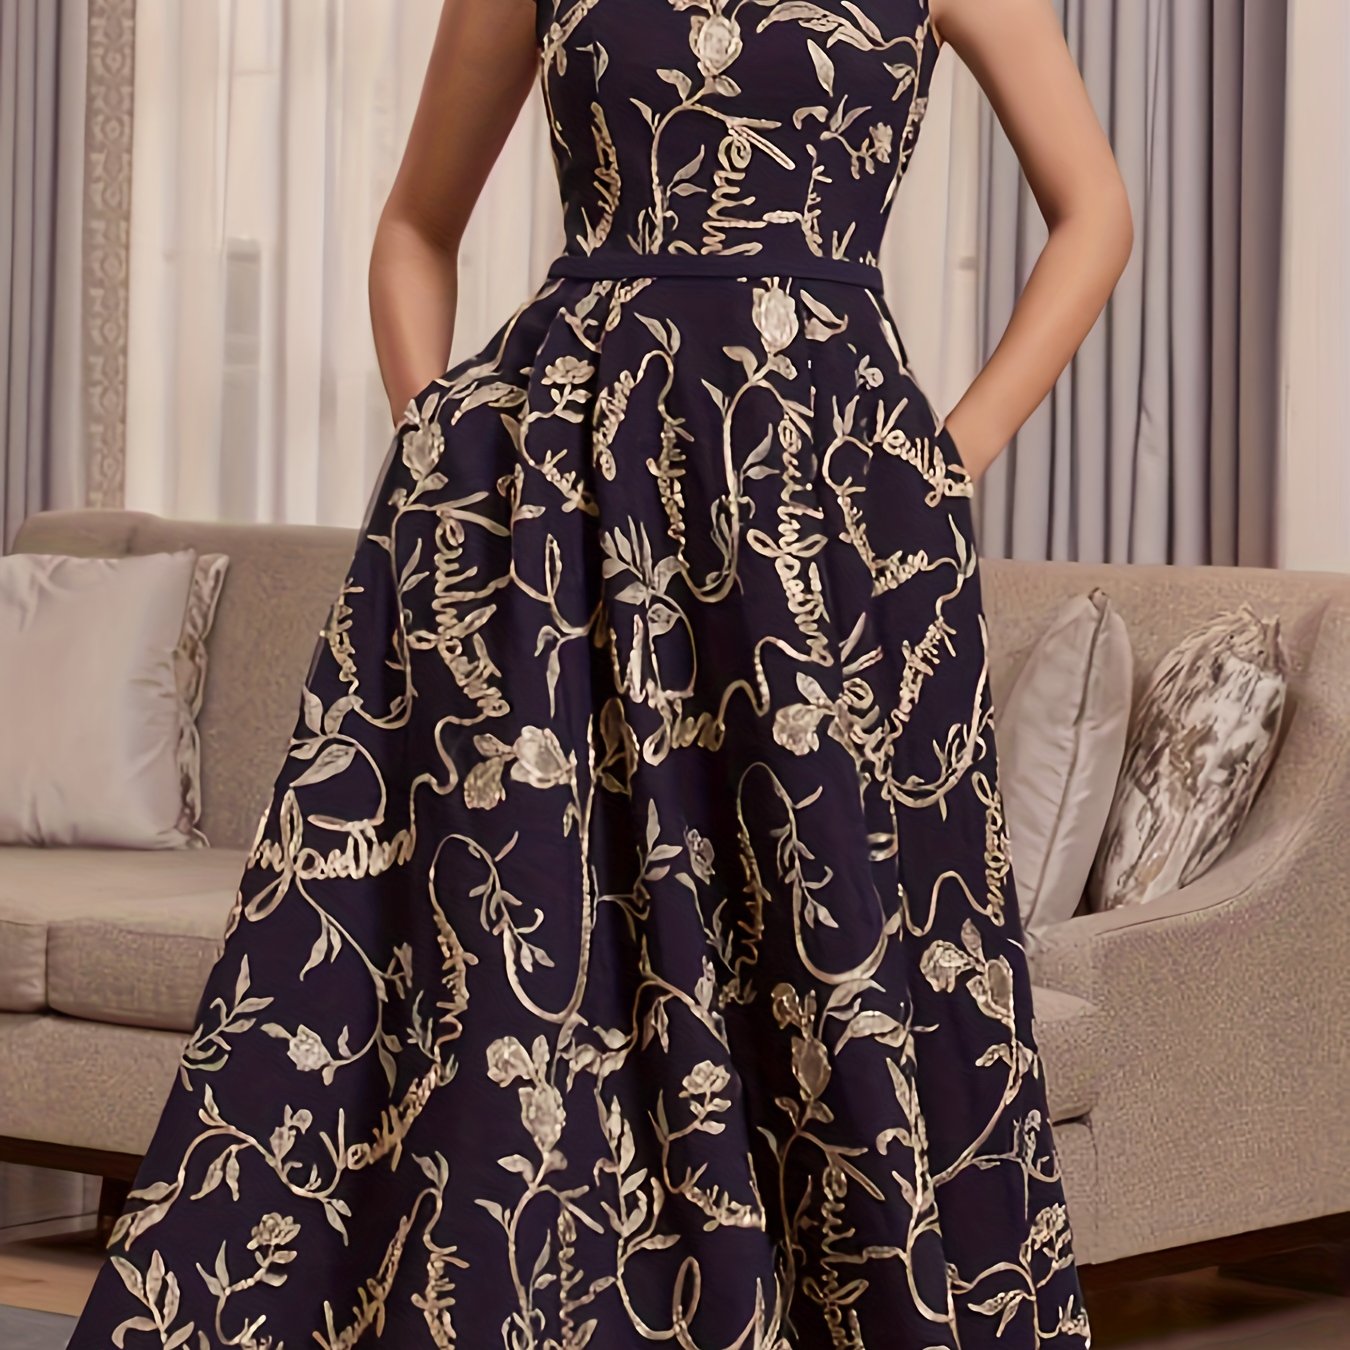 Antmvs Plus Size Elegant Bridesmaid Dress, Women's Plus Floral Print Cap Sleeve Square Neck A-line Maxi Evening Formal Dress